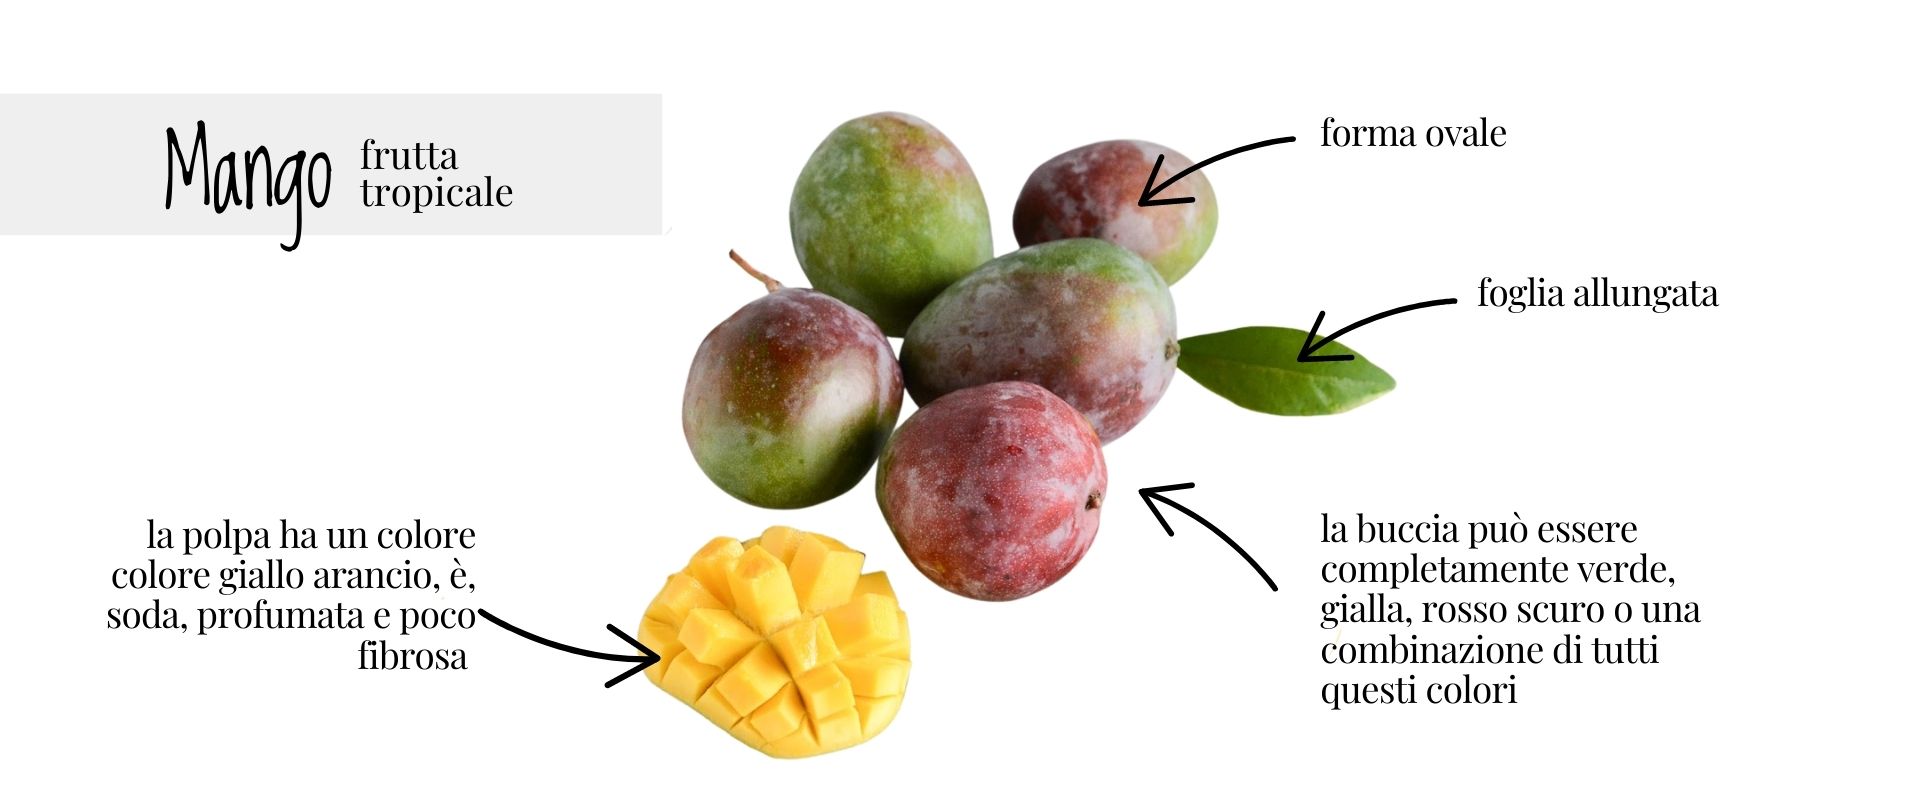 Mango: uno dei frutti tropicali più amati